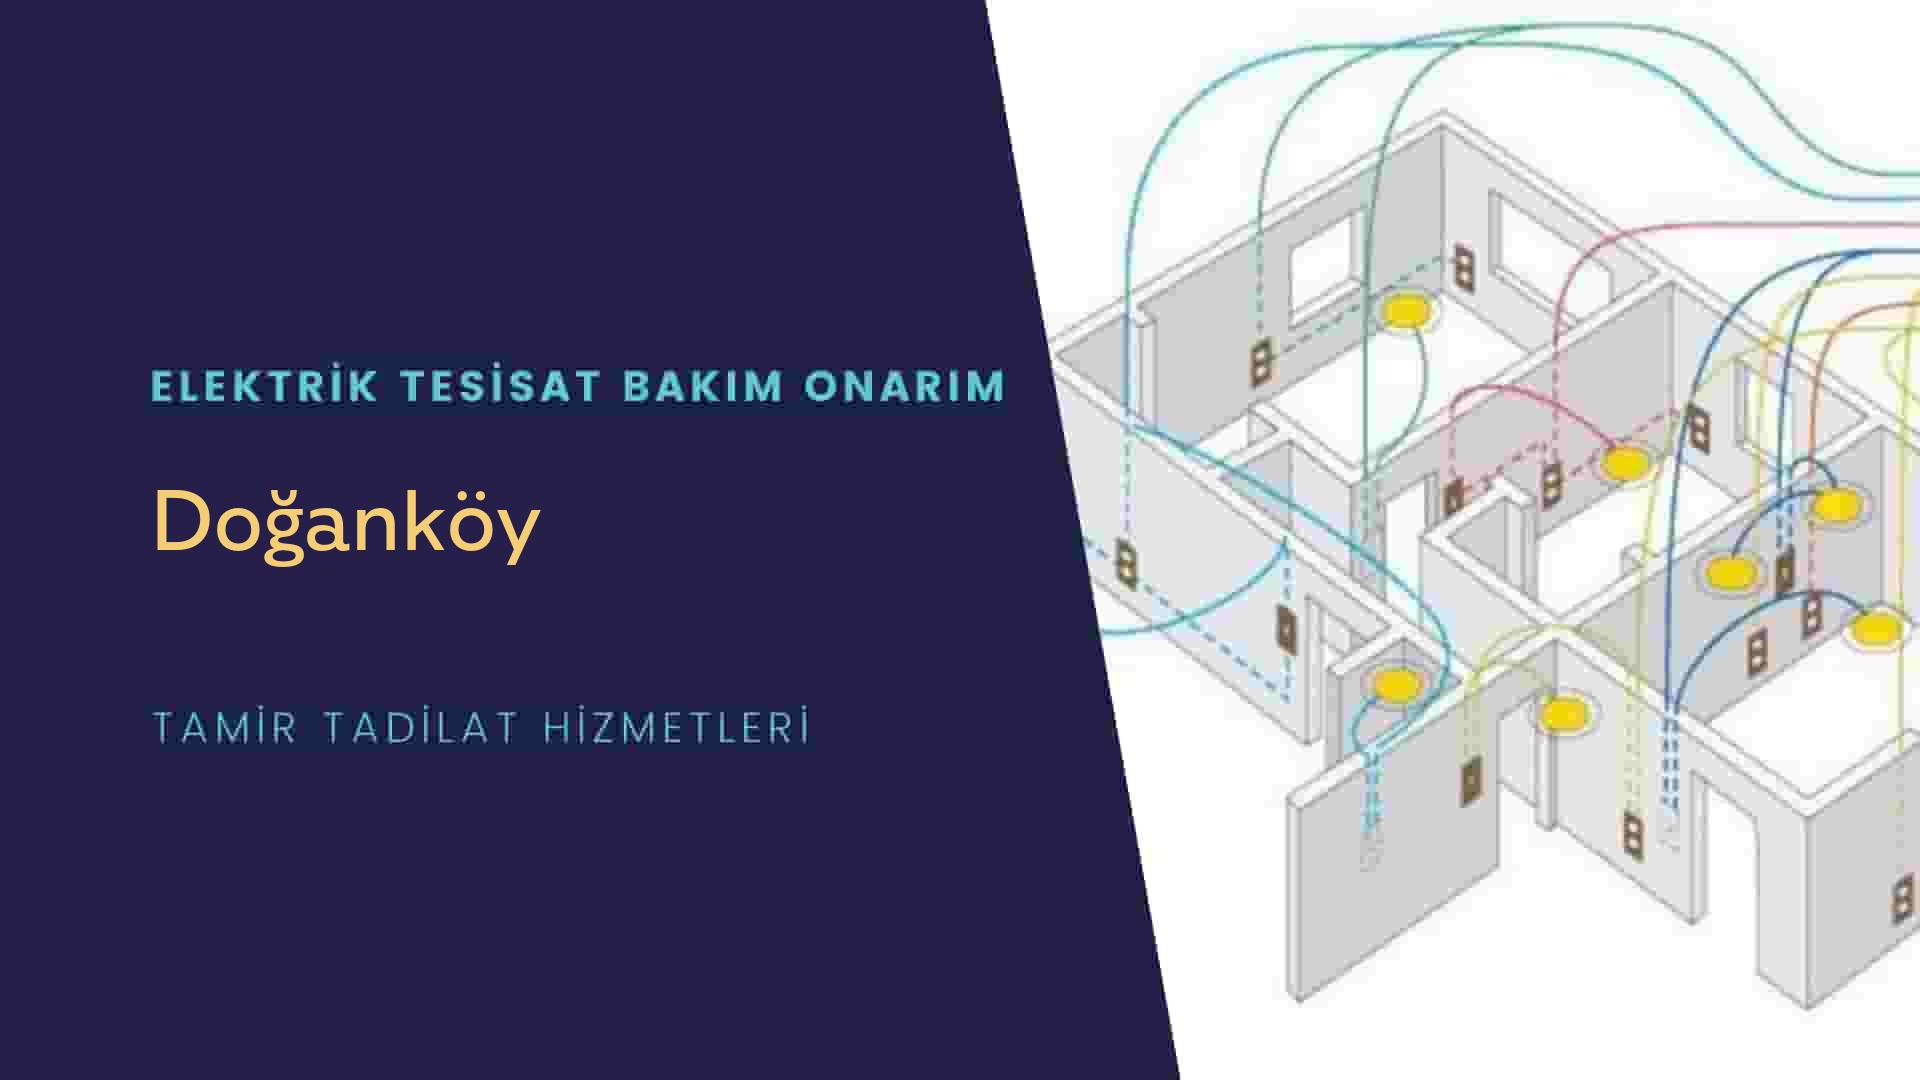 Doğanköy'de elektrik tesisatı ustalarımı arıyorsunuz doğru adrestenizi Doğanköy elektrik tesisatı ustalarımız 7/24 sizlere hizmet vermekten mutluluk duyar.